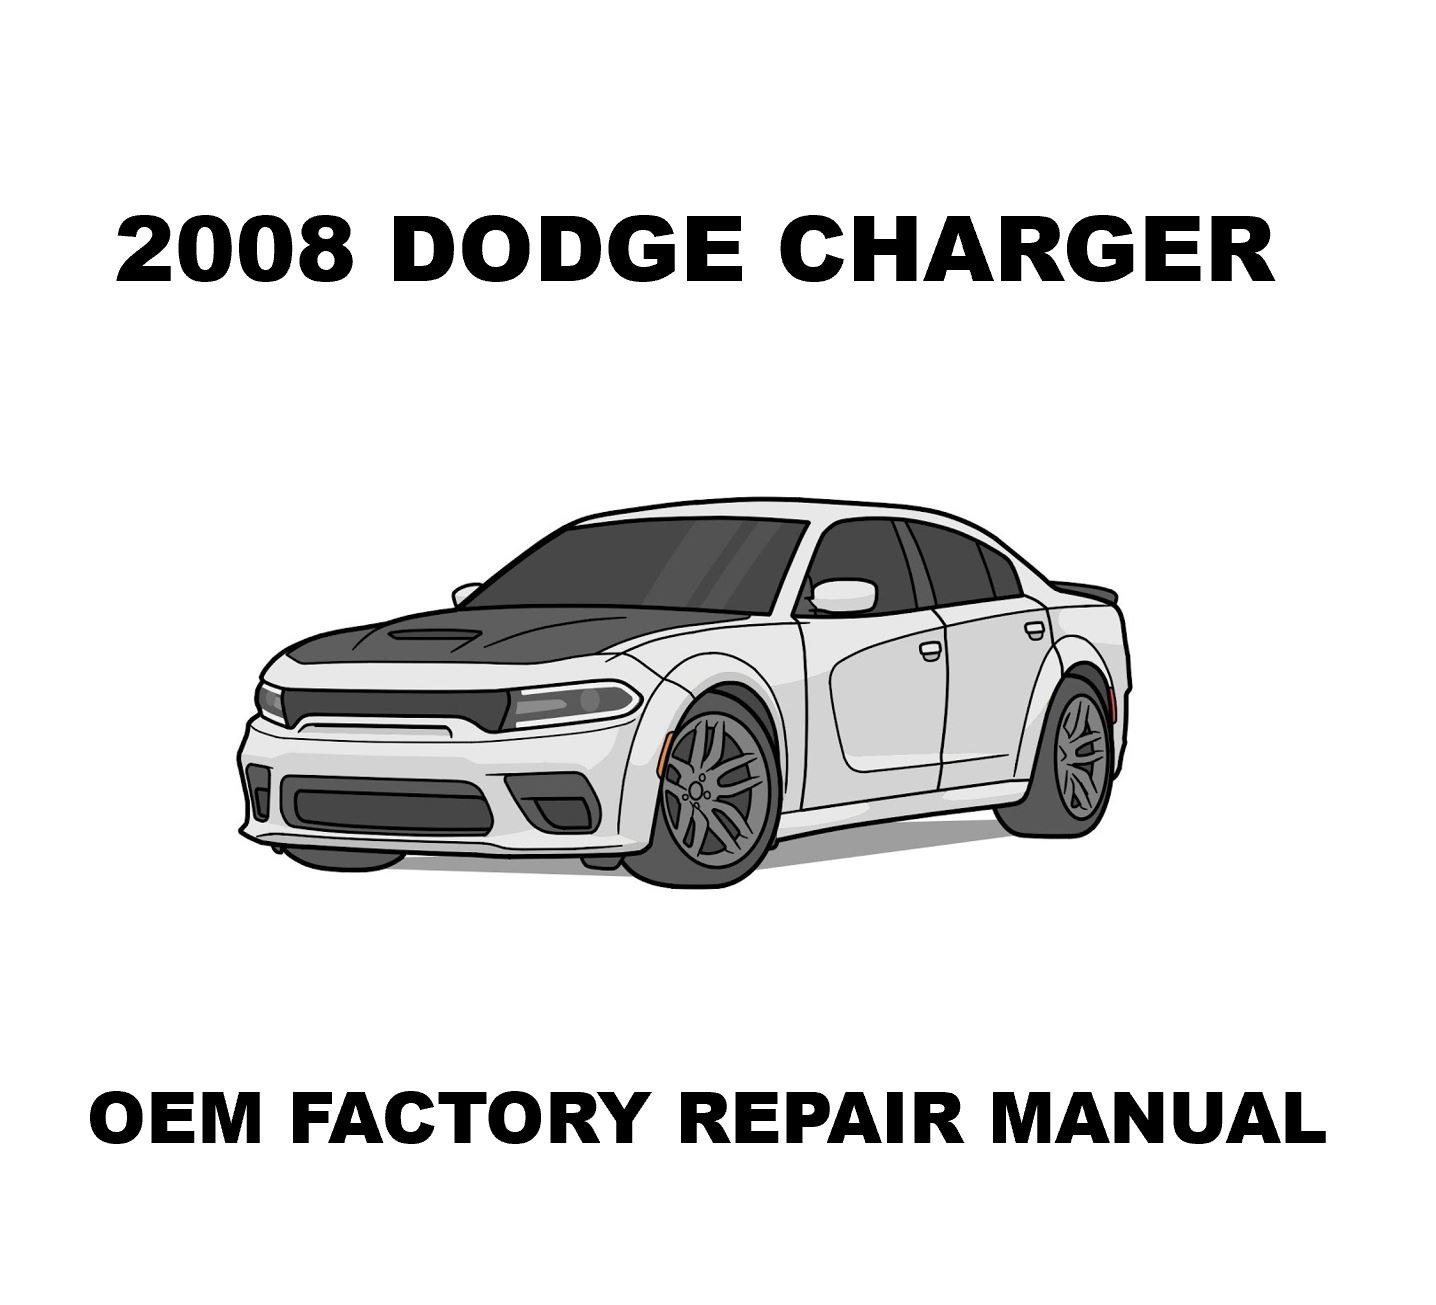 2008_dodge_charger_repair_manual_1436